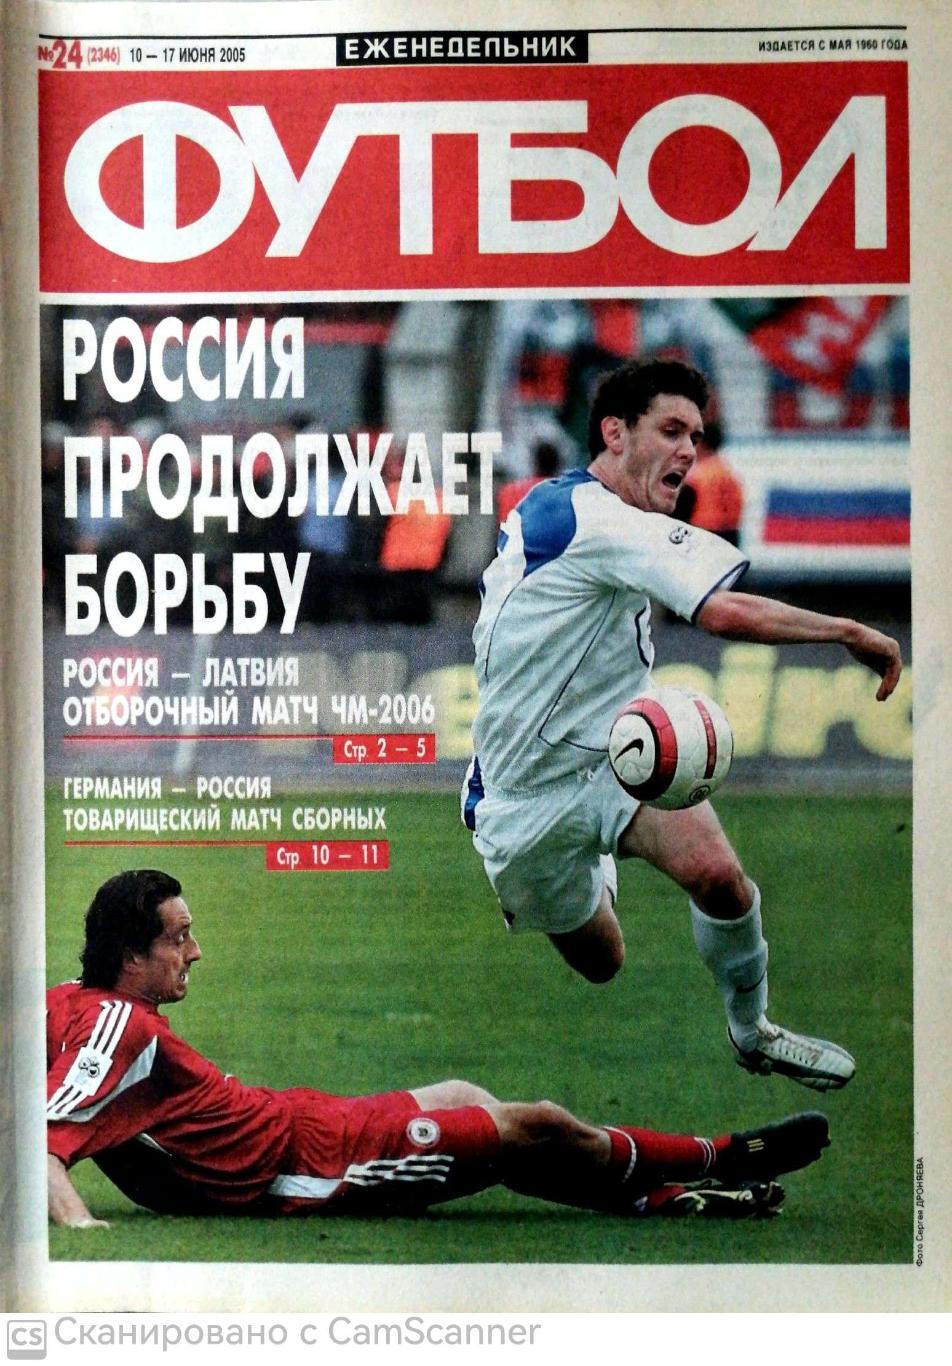 Еженедельник «Футбол» (Москва). 2005 год. №24 россия - латвия